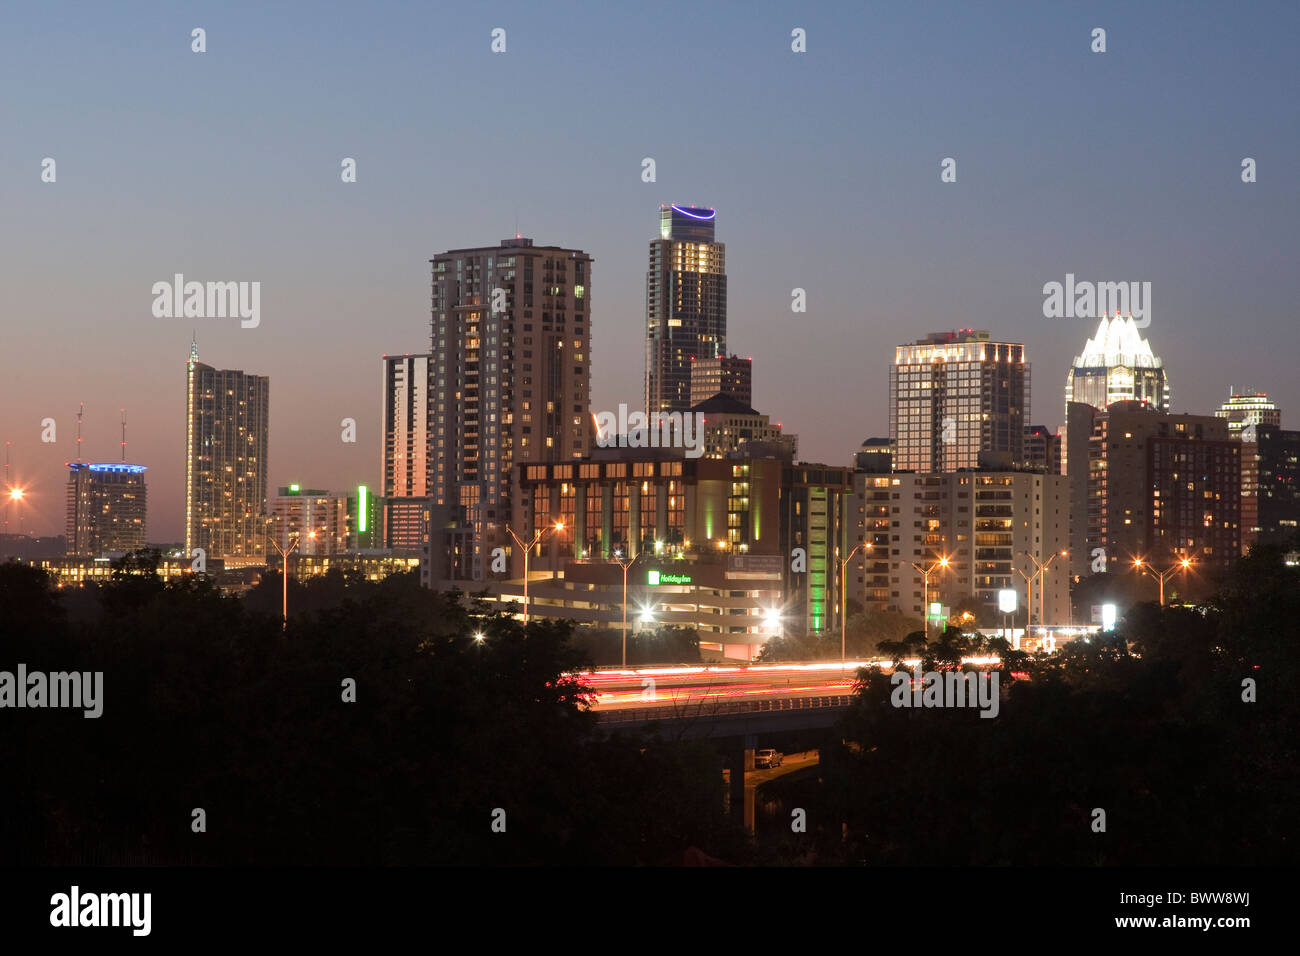 Skyline der Innenstadt von Austin, Texas, mit neuen Wolkenkratzer zeigt Wachstum der Stadt während der wirtschaftliche Abschwung in anderen Teilen der USA Stockfoto